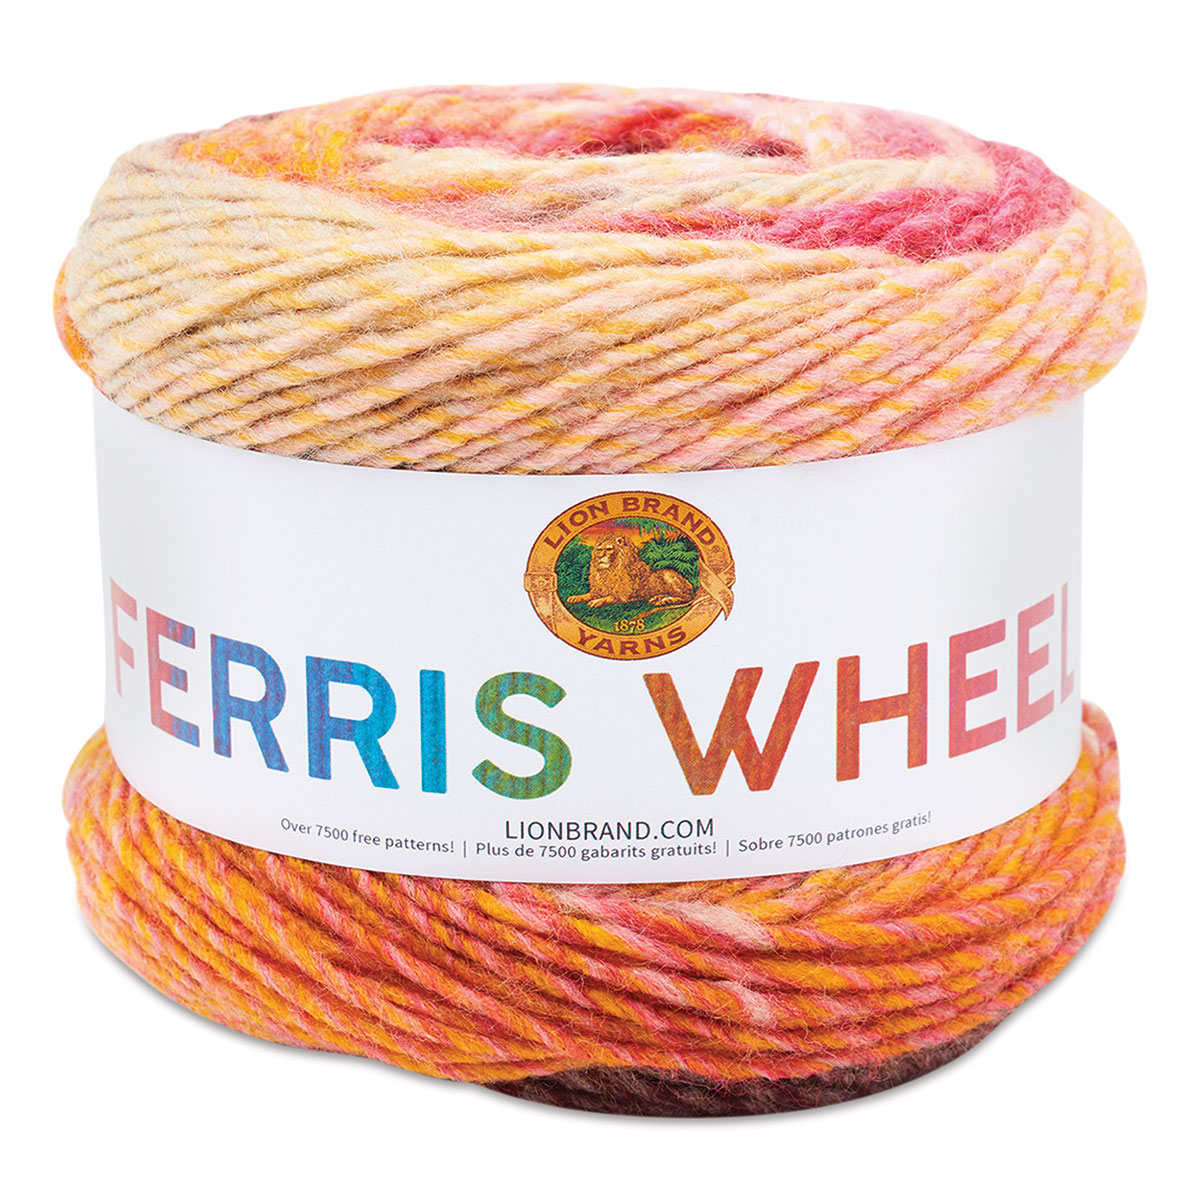 ferris wheel yarn Archives - TL Yarn Crafts